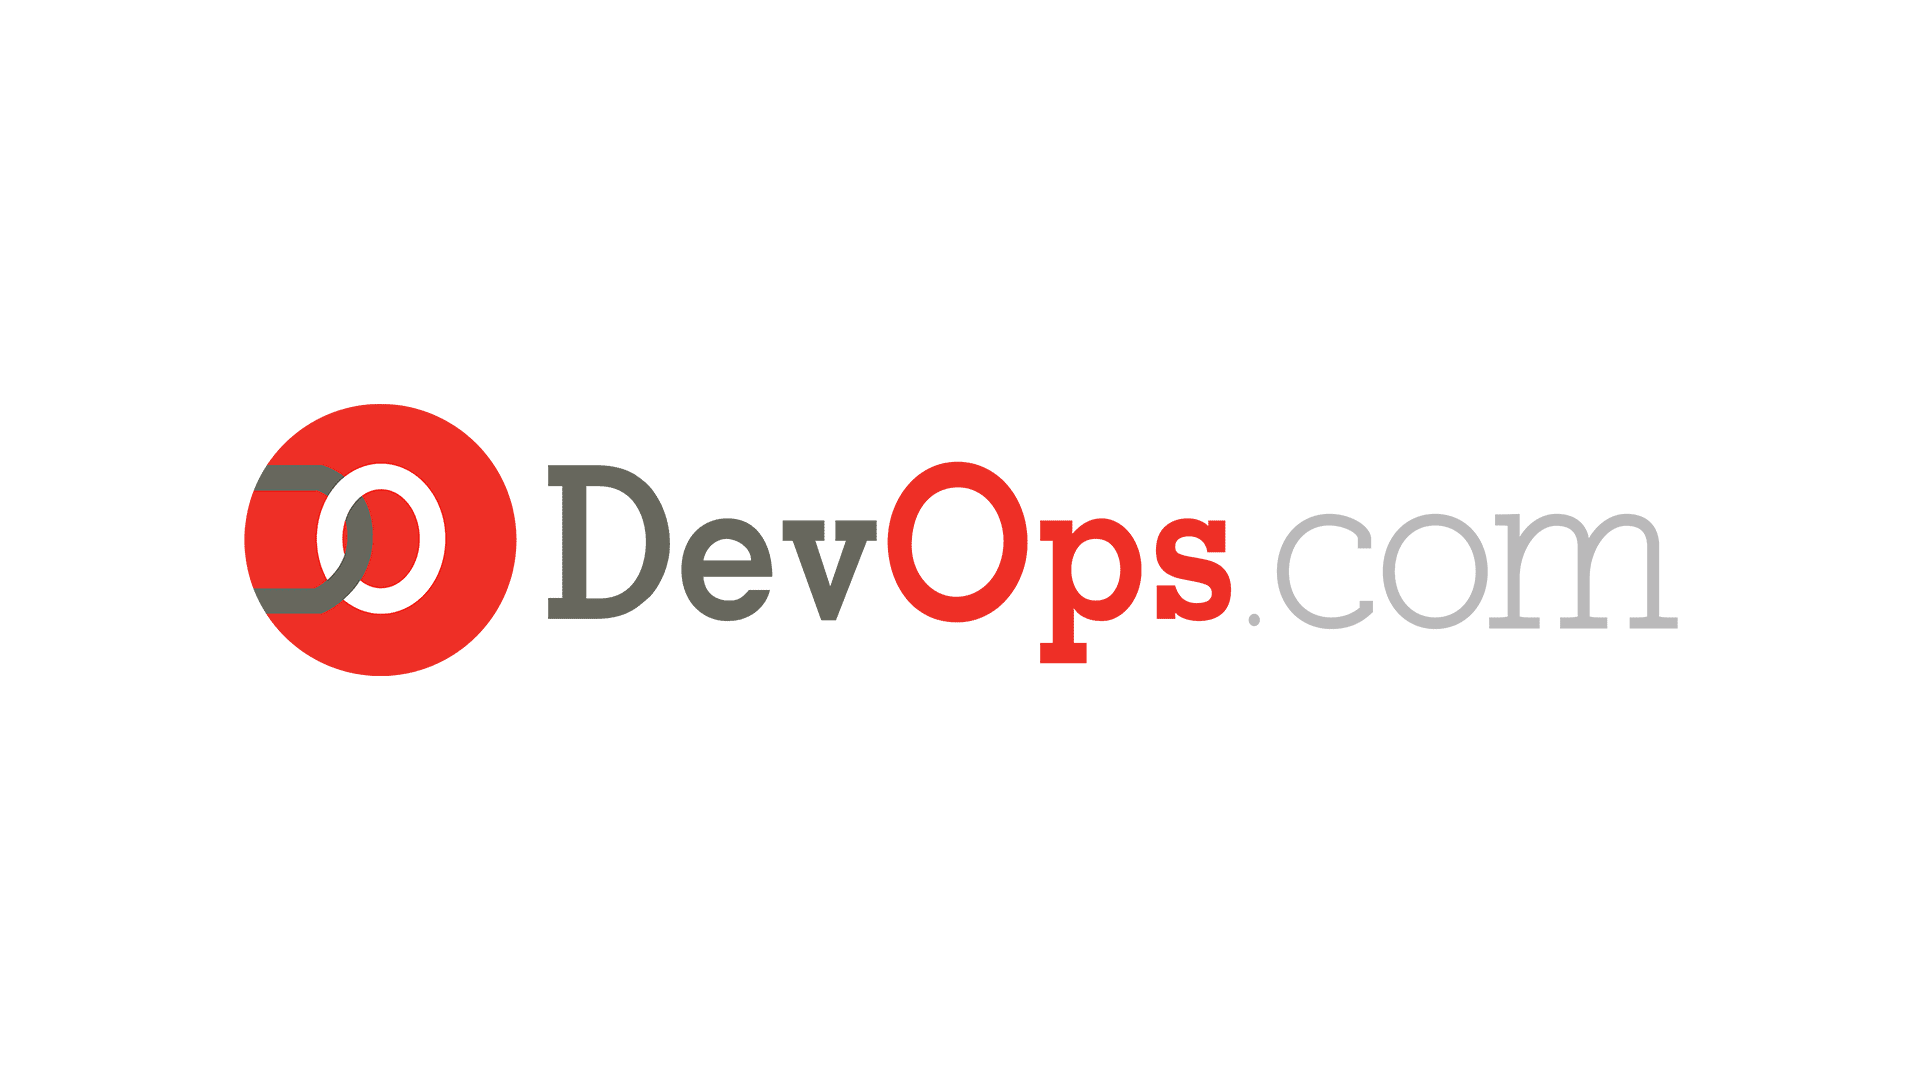 Devops_logo2